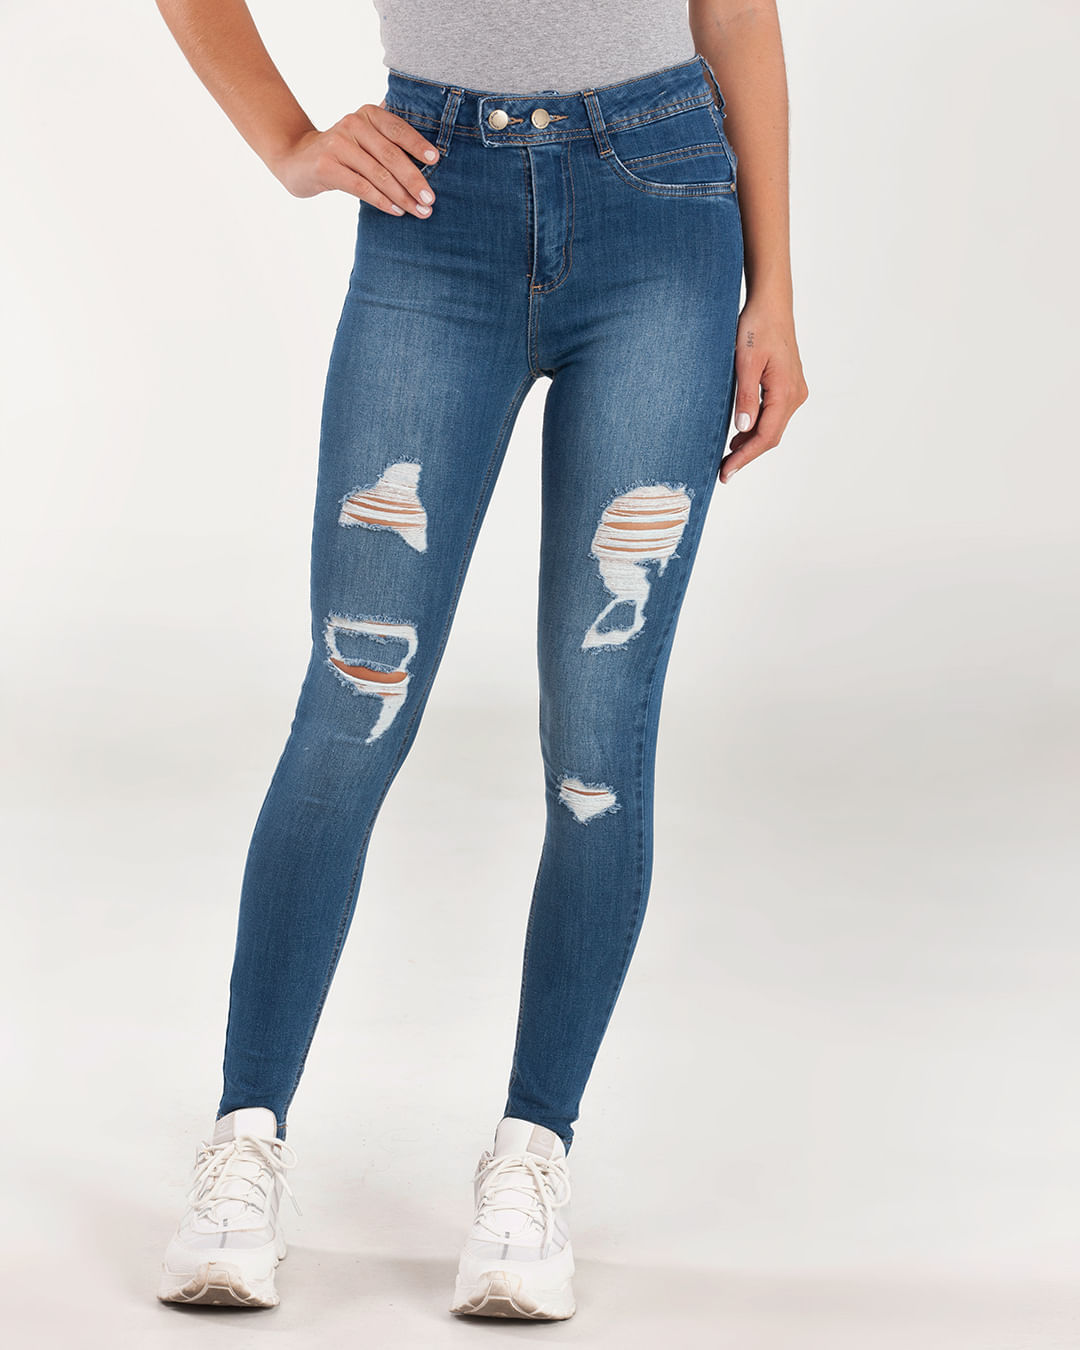 Calca-Jeans-Feminina-Destroyed-Azul-Escuro